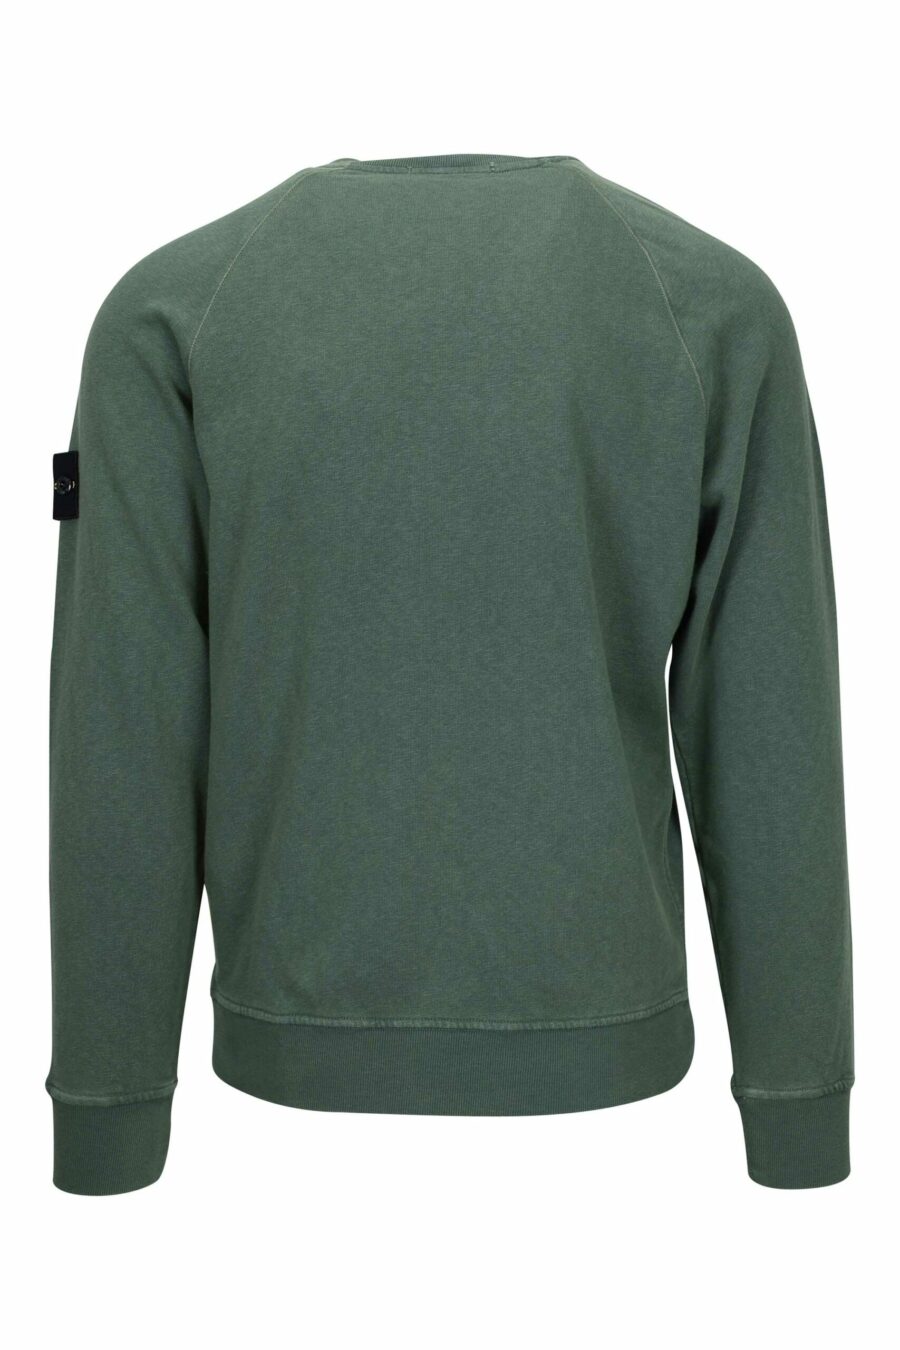 Sweat-shirt vert militaire avec patch logo boussole - 8052572906923 1 à l'échelle